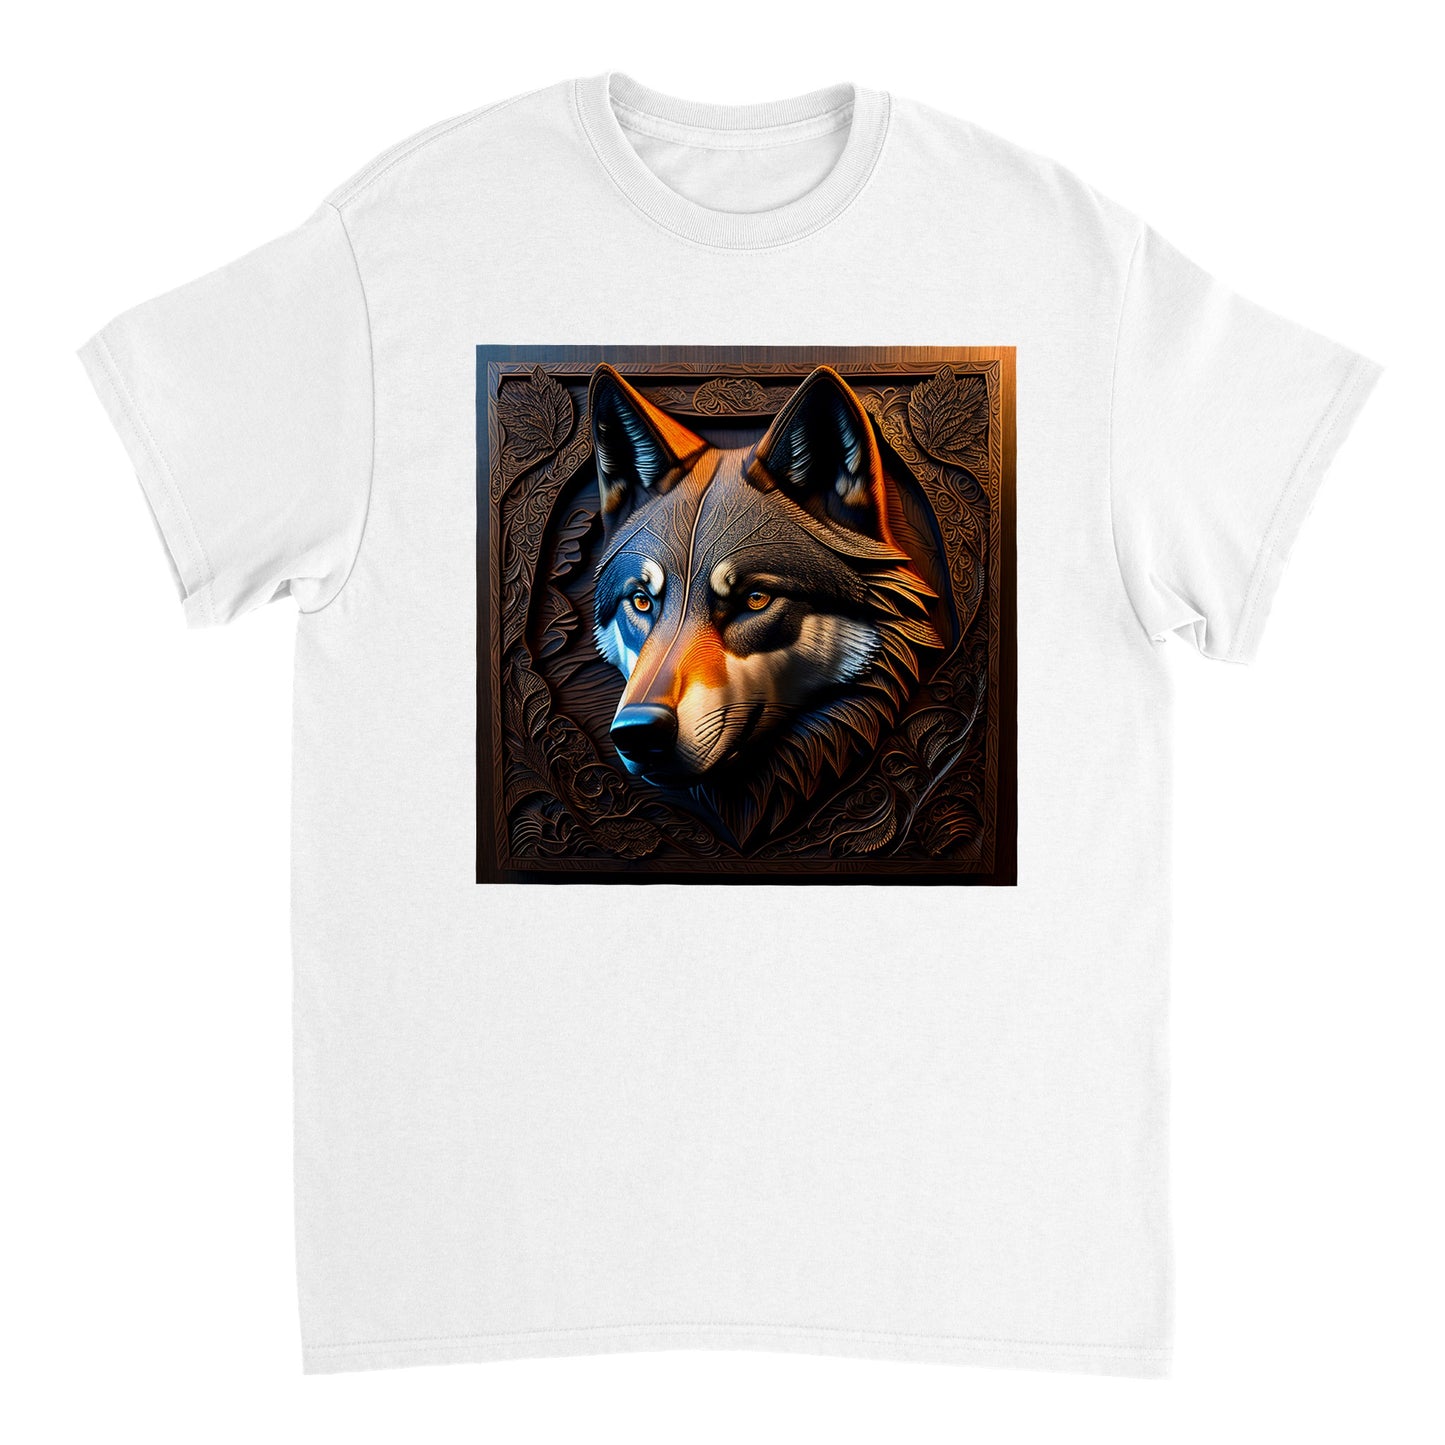 3D Wooden Animal Art - Heavyweight Unisex Crewneck T-shirt 44